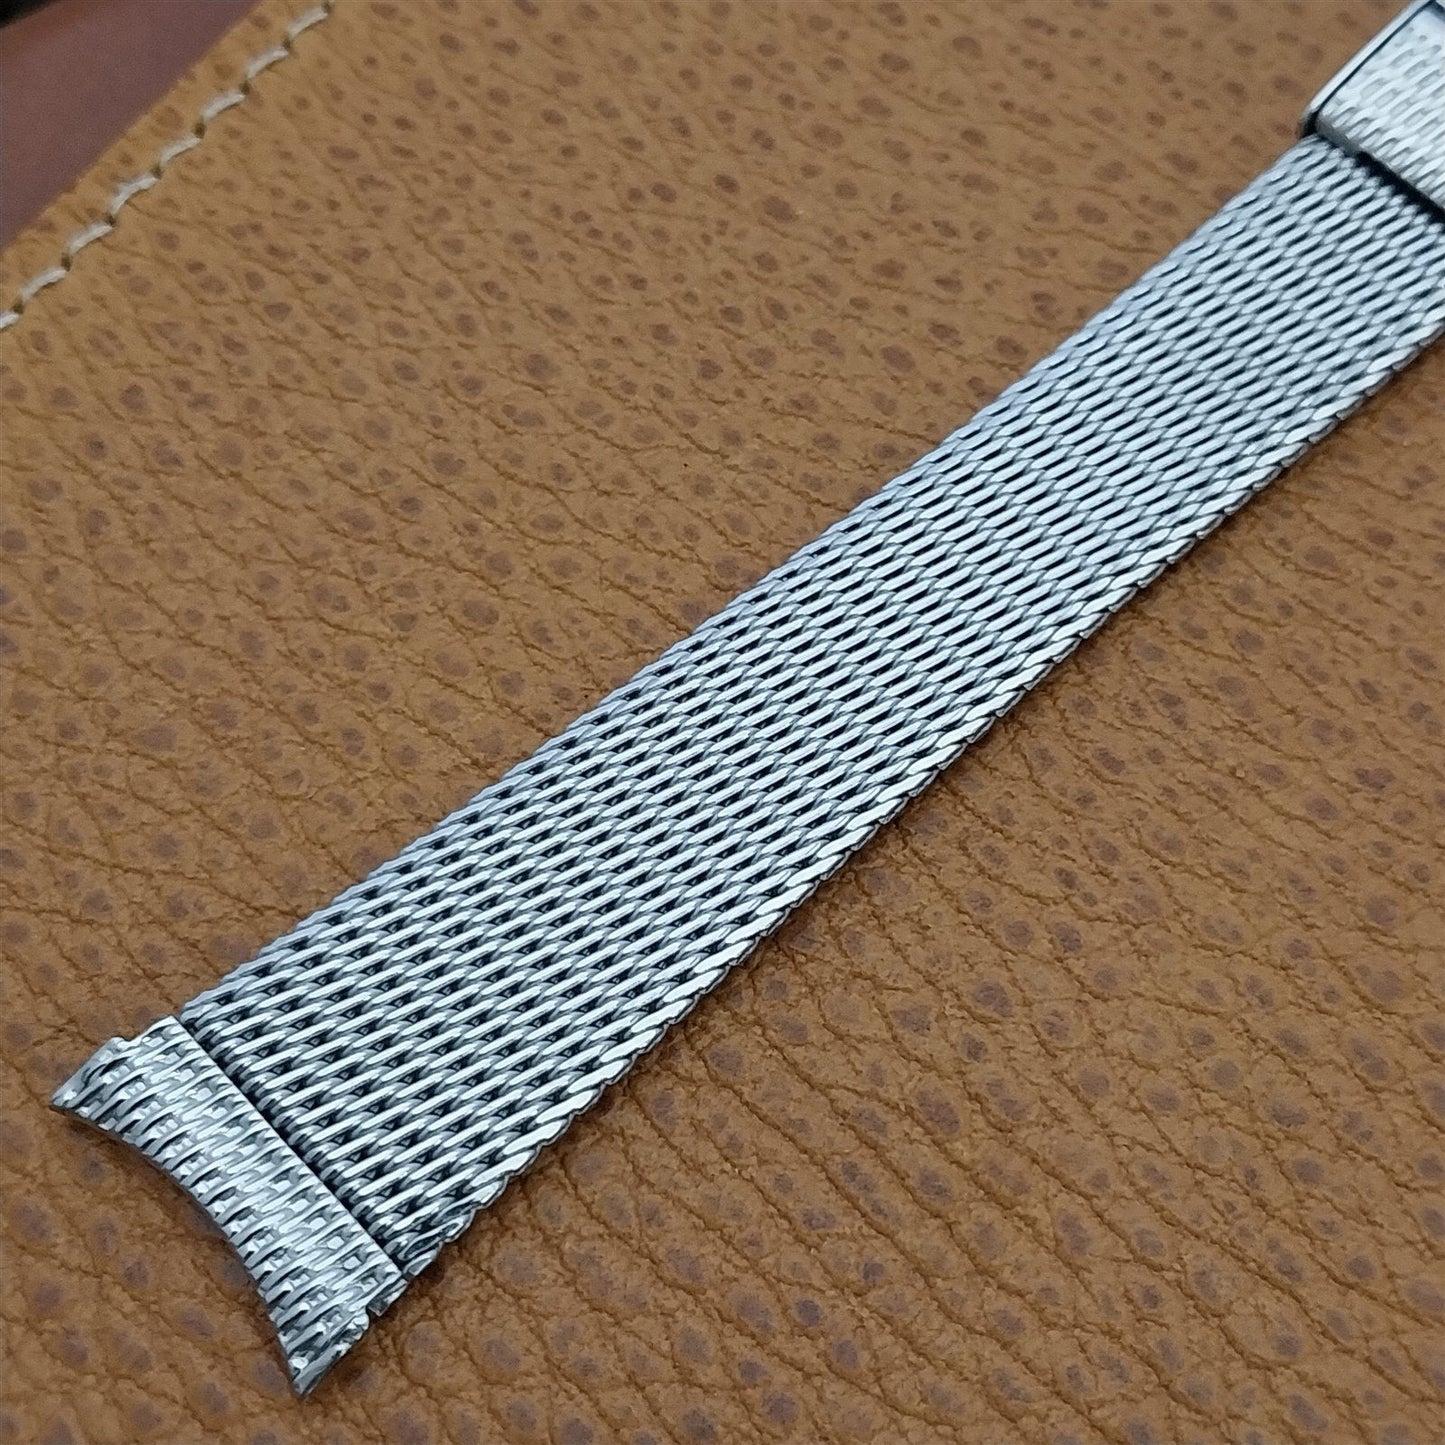 19mm 18mm 1960s Vintage Kreisler Classic Stainless Steel Mesh Unused Watch Band